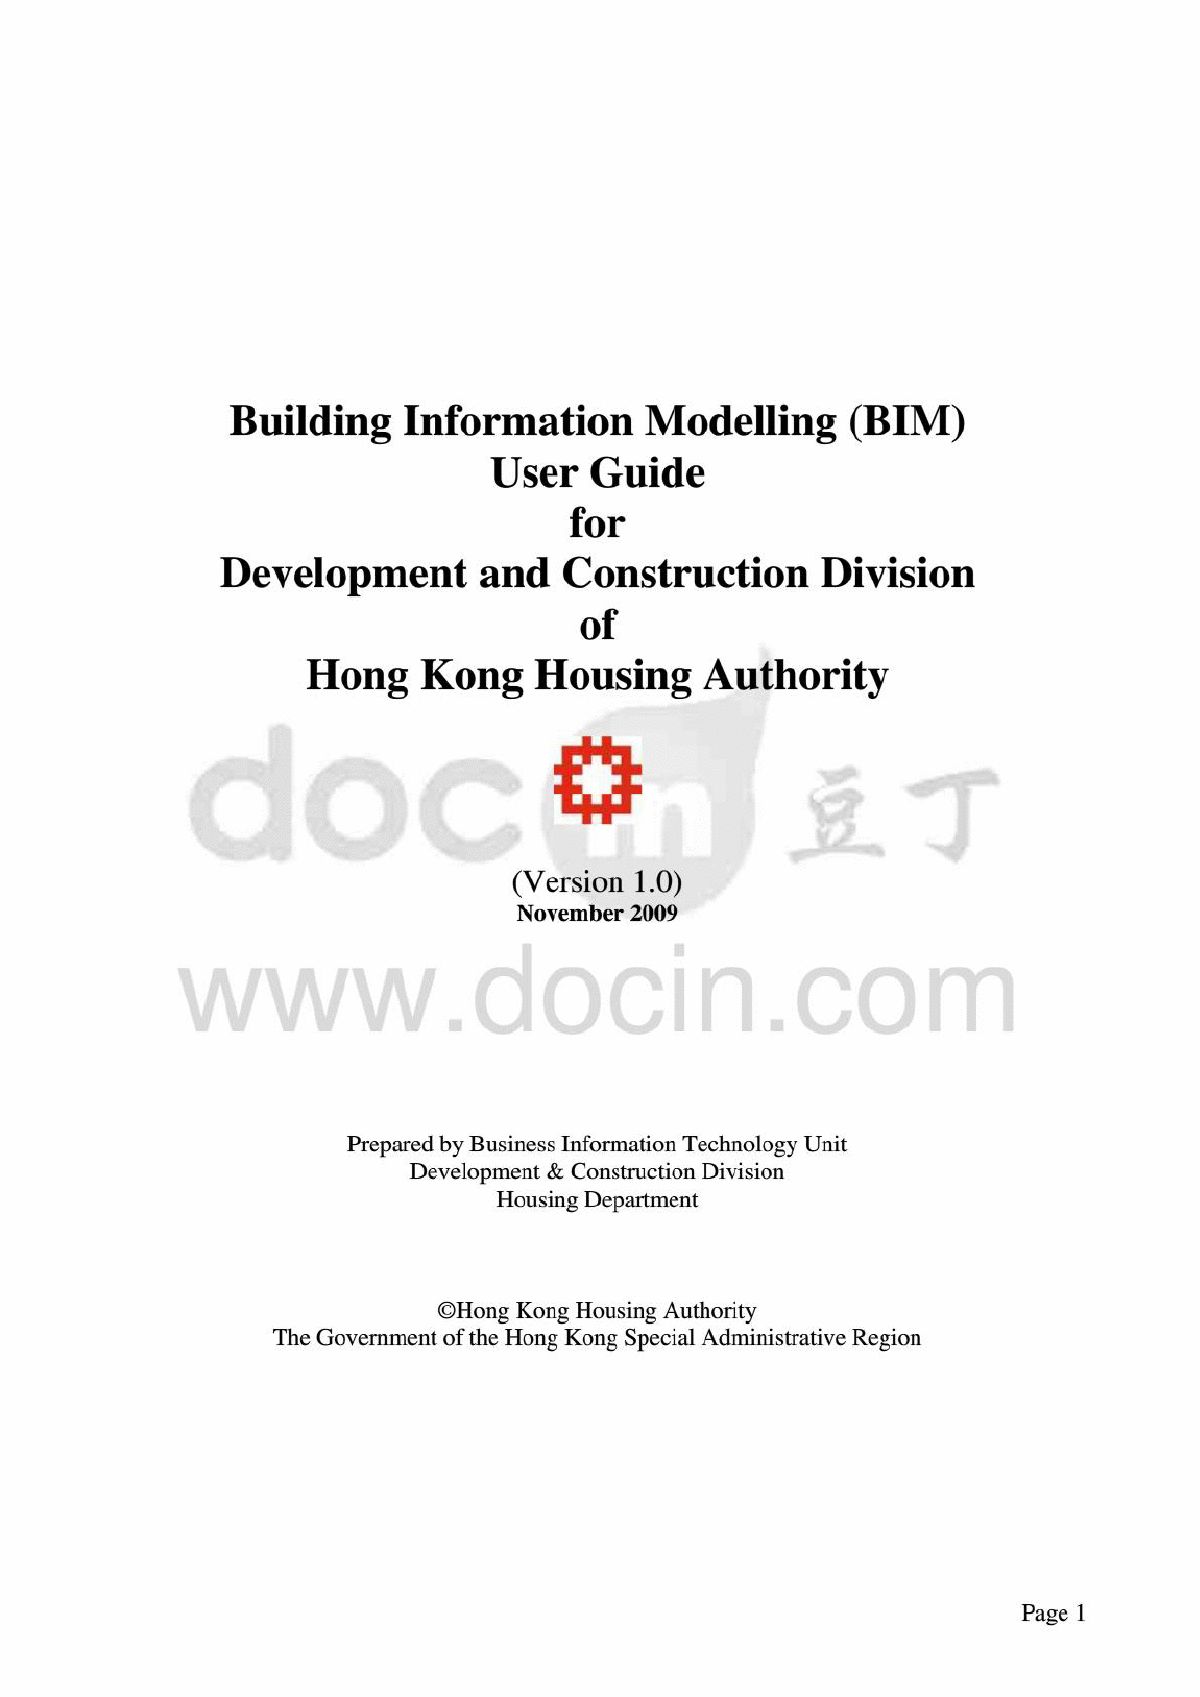 香港房屋署-BIM用户指南 PDF